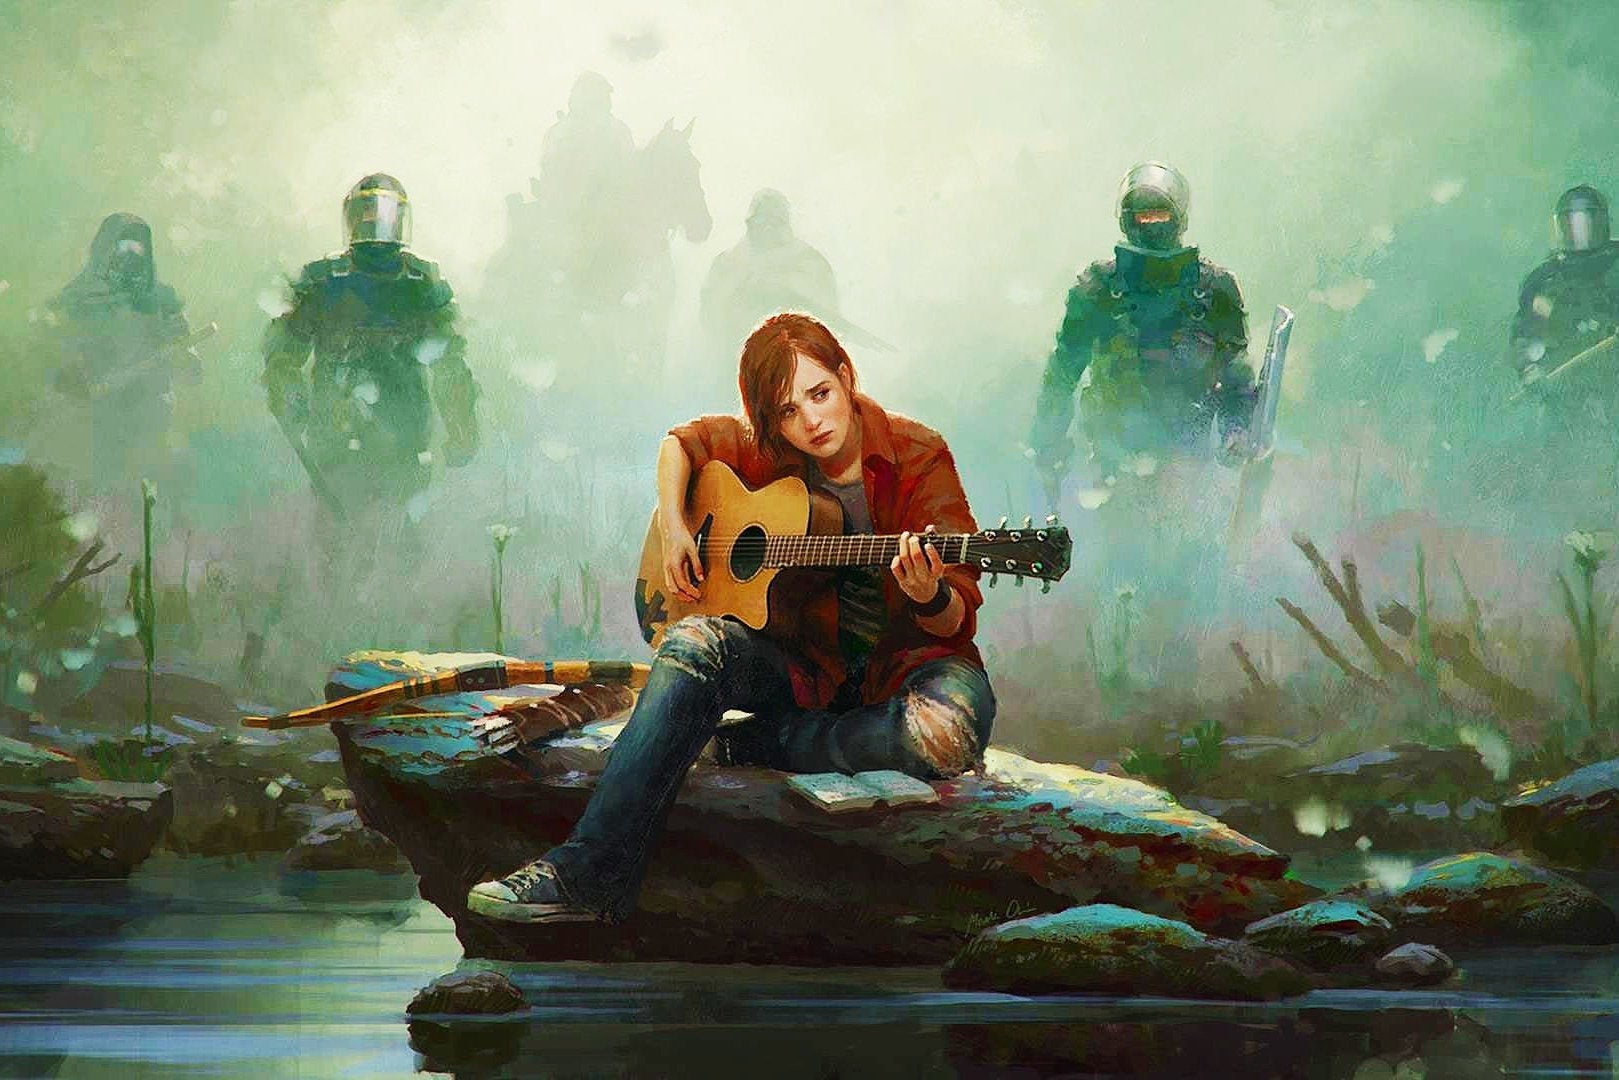 Immagine di E3 2016: conferenza Sony? God of War 4 verrà mostrato, The Last of Us 2 no